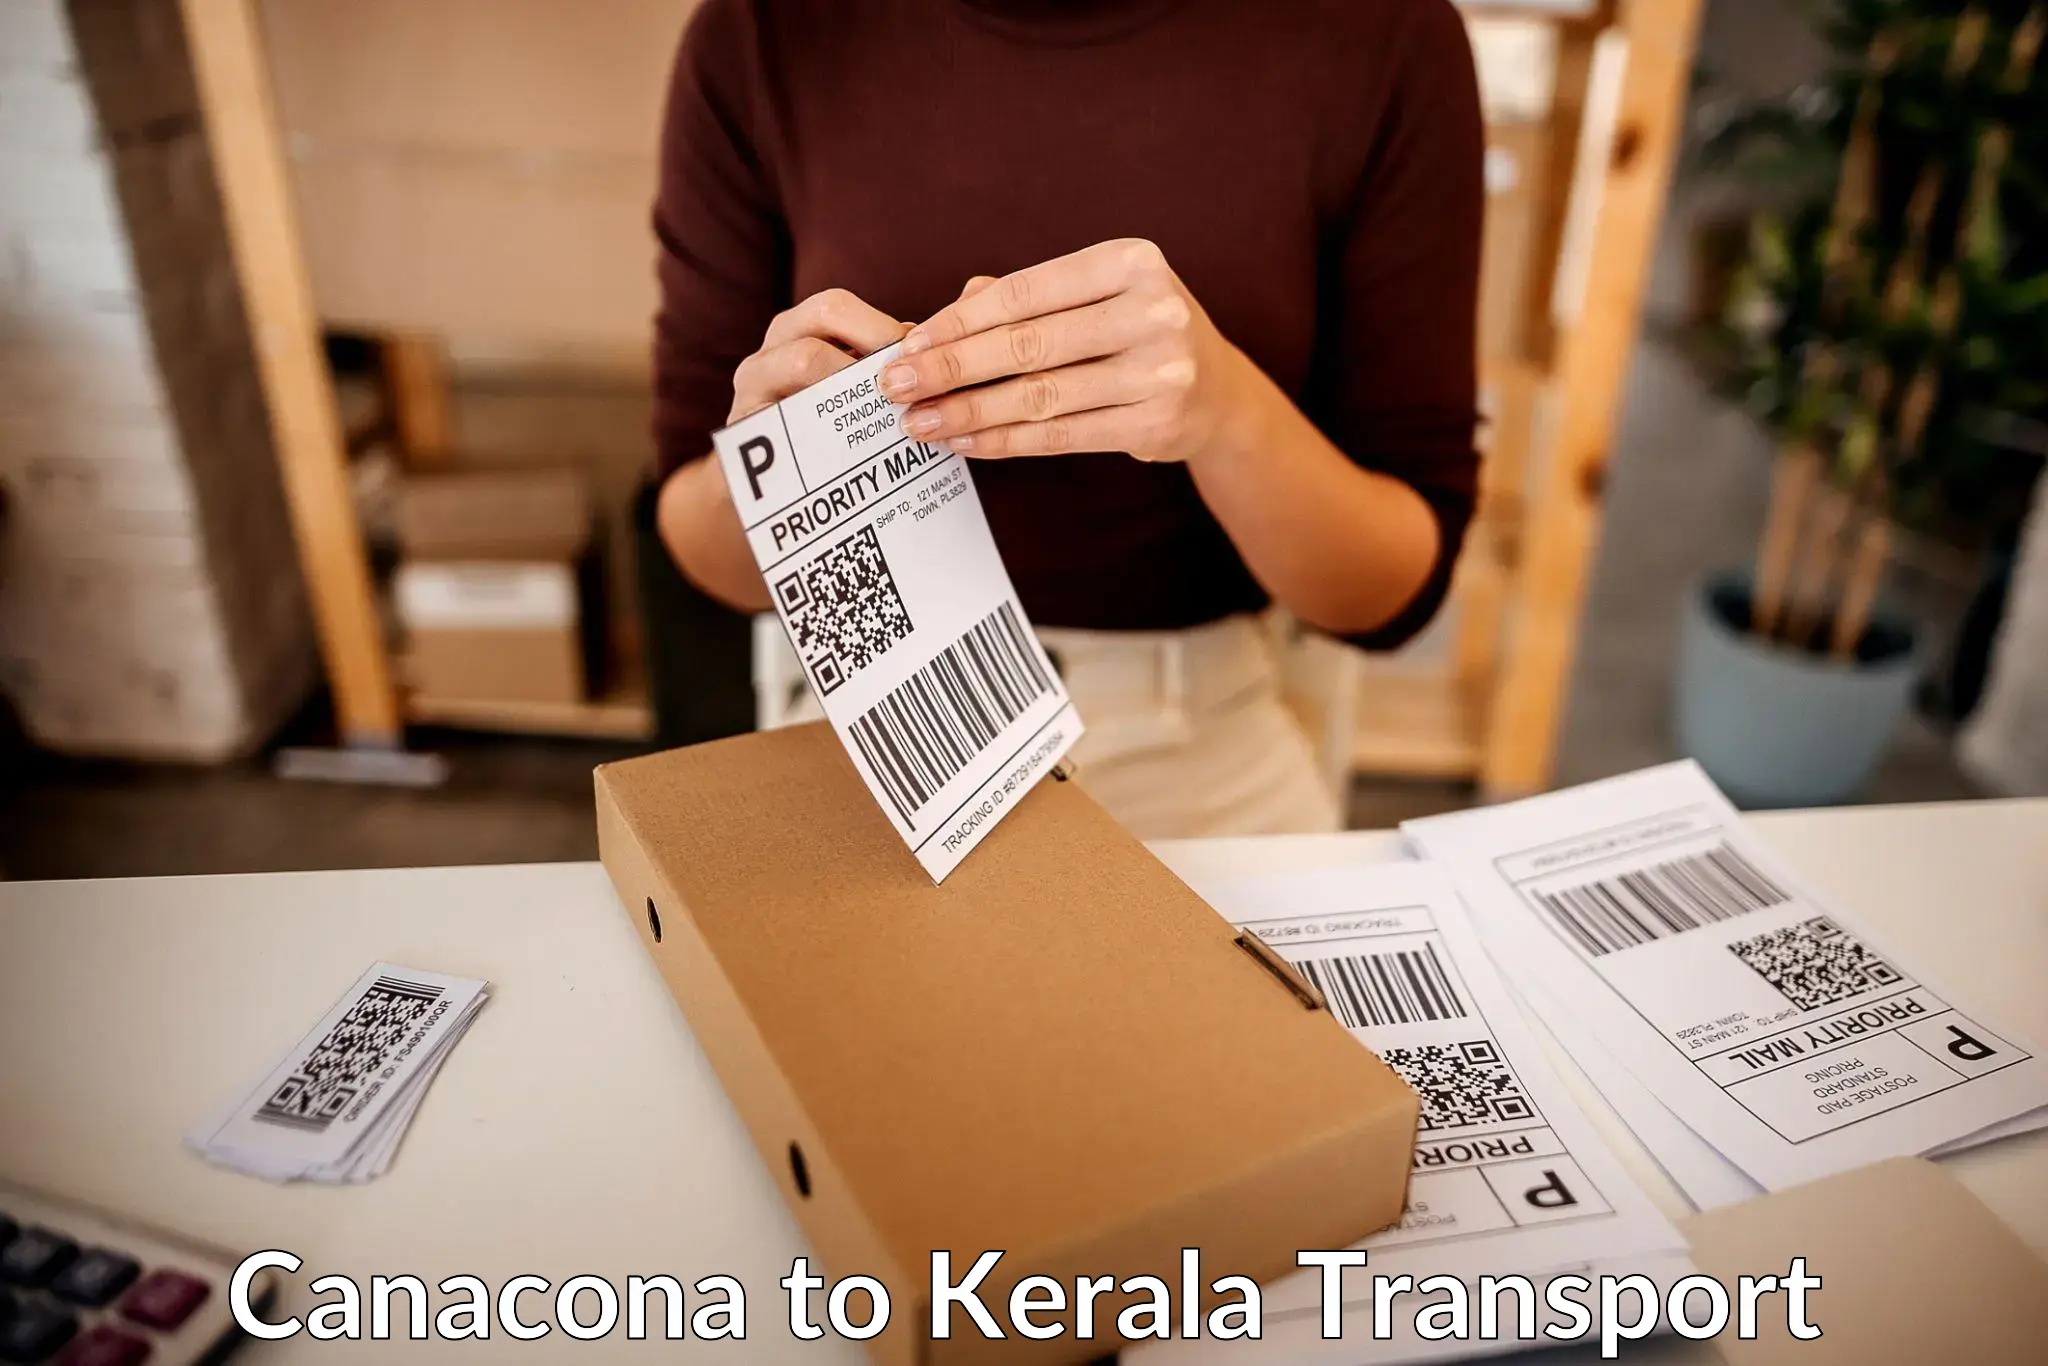 Luggage transport services Canacona to Kattappana